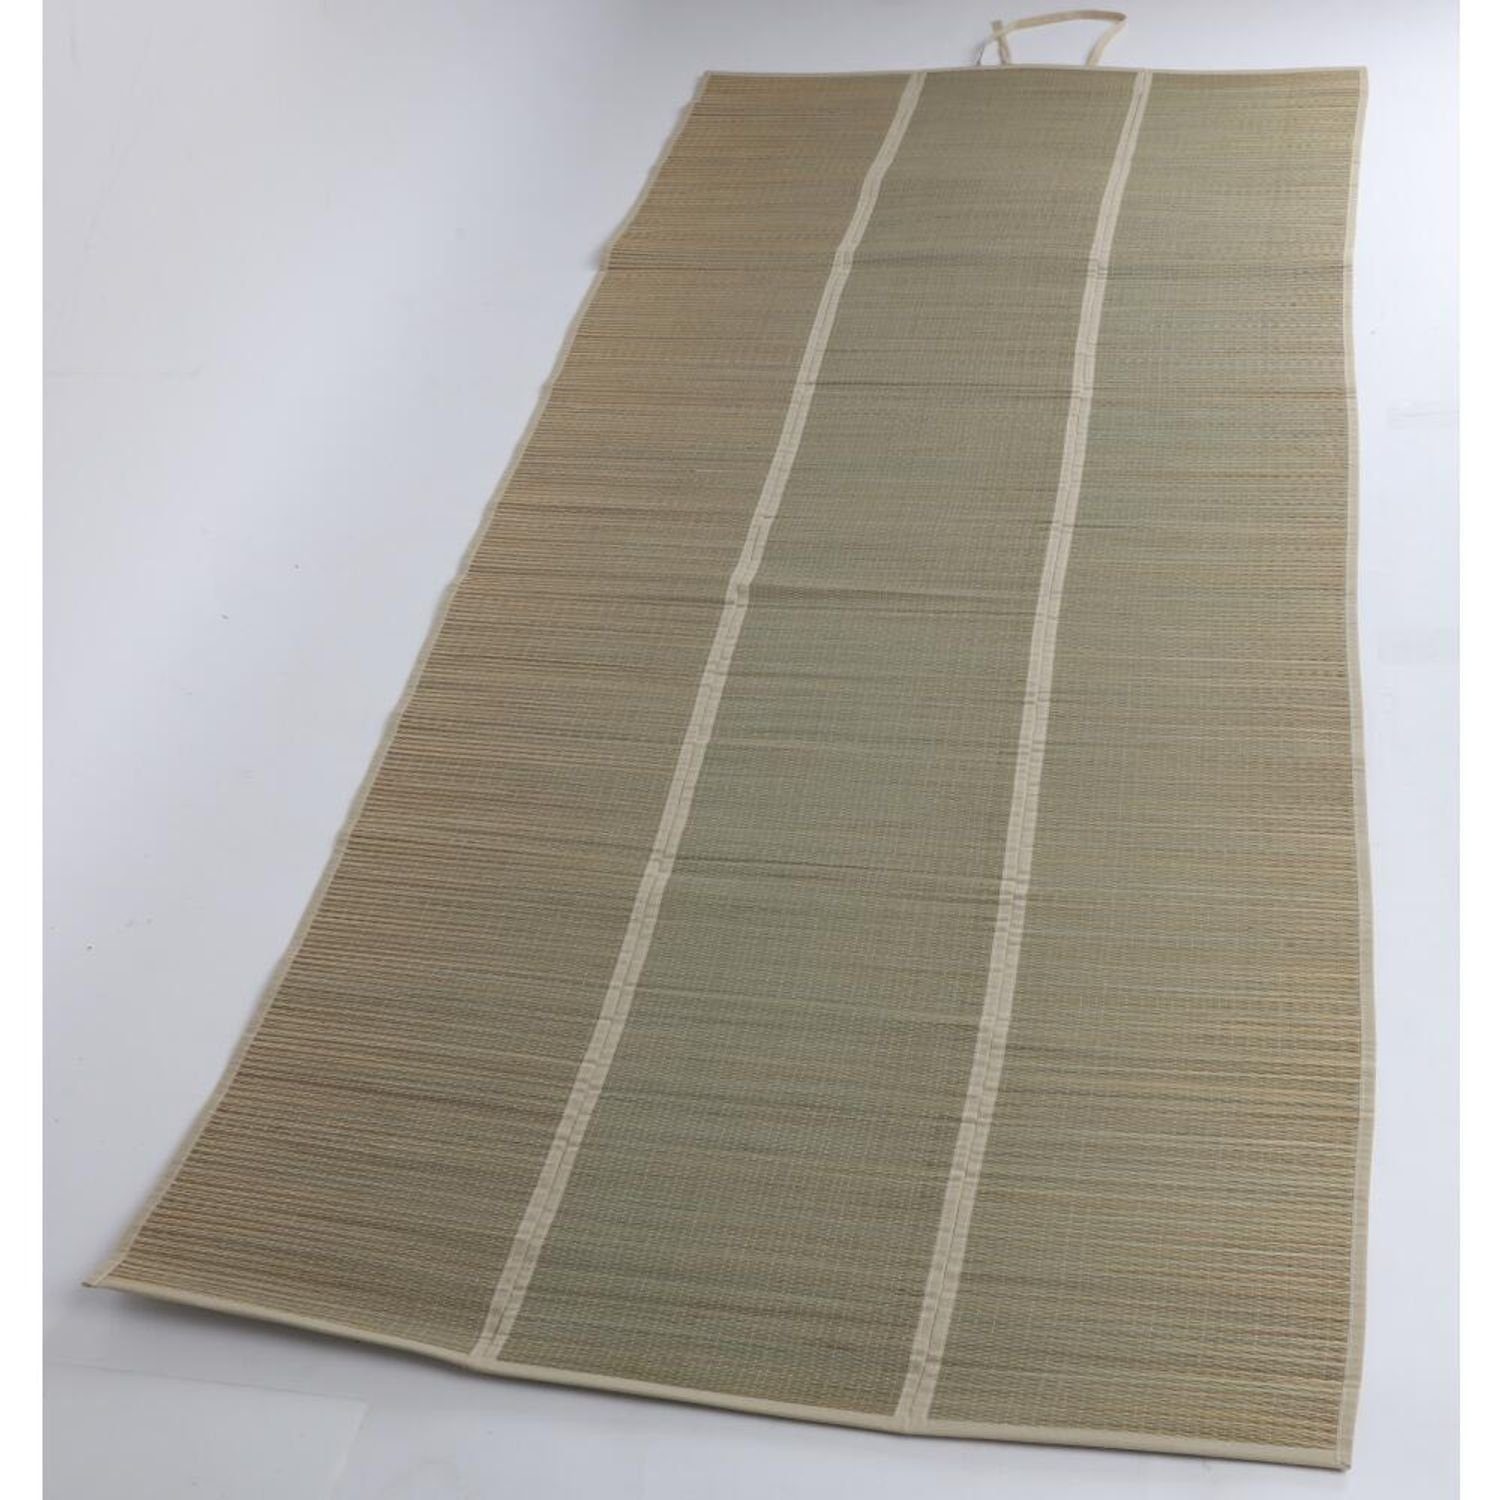 BURI Yogamatte 12x Strandmatte Seegras Decken Sonnenliege Unterlage Tuch 90x190cm